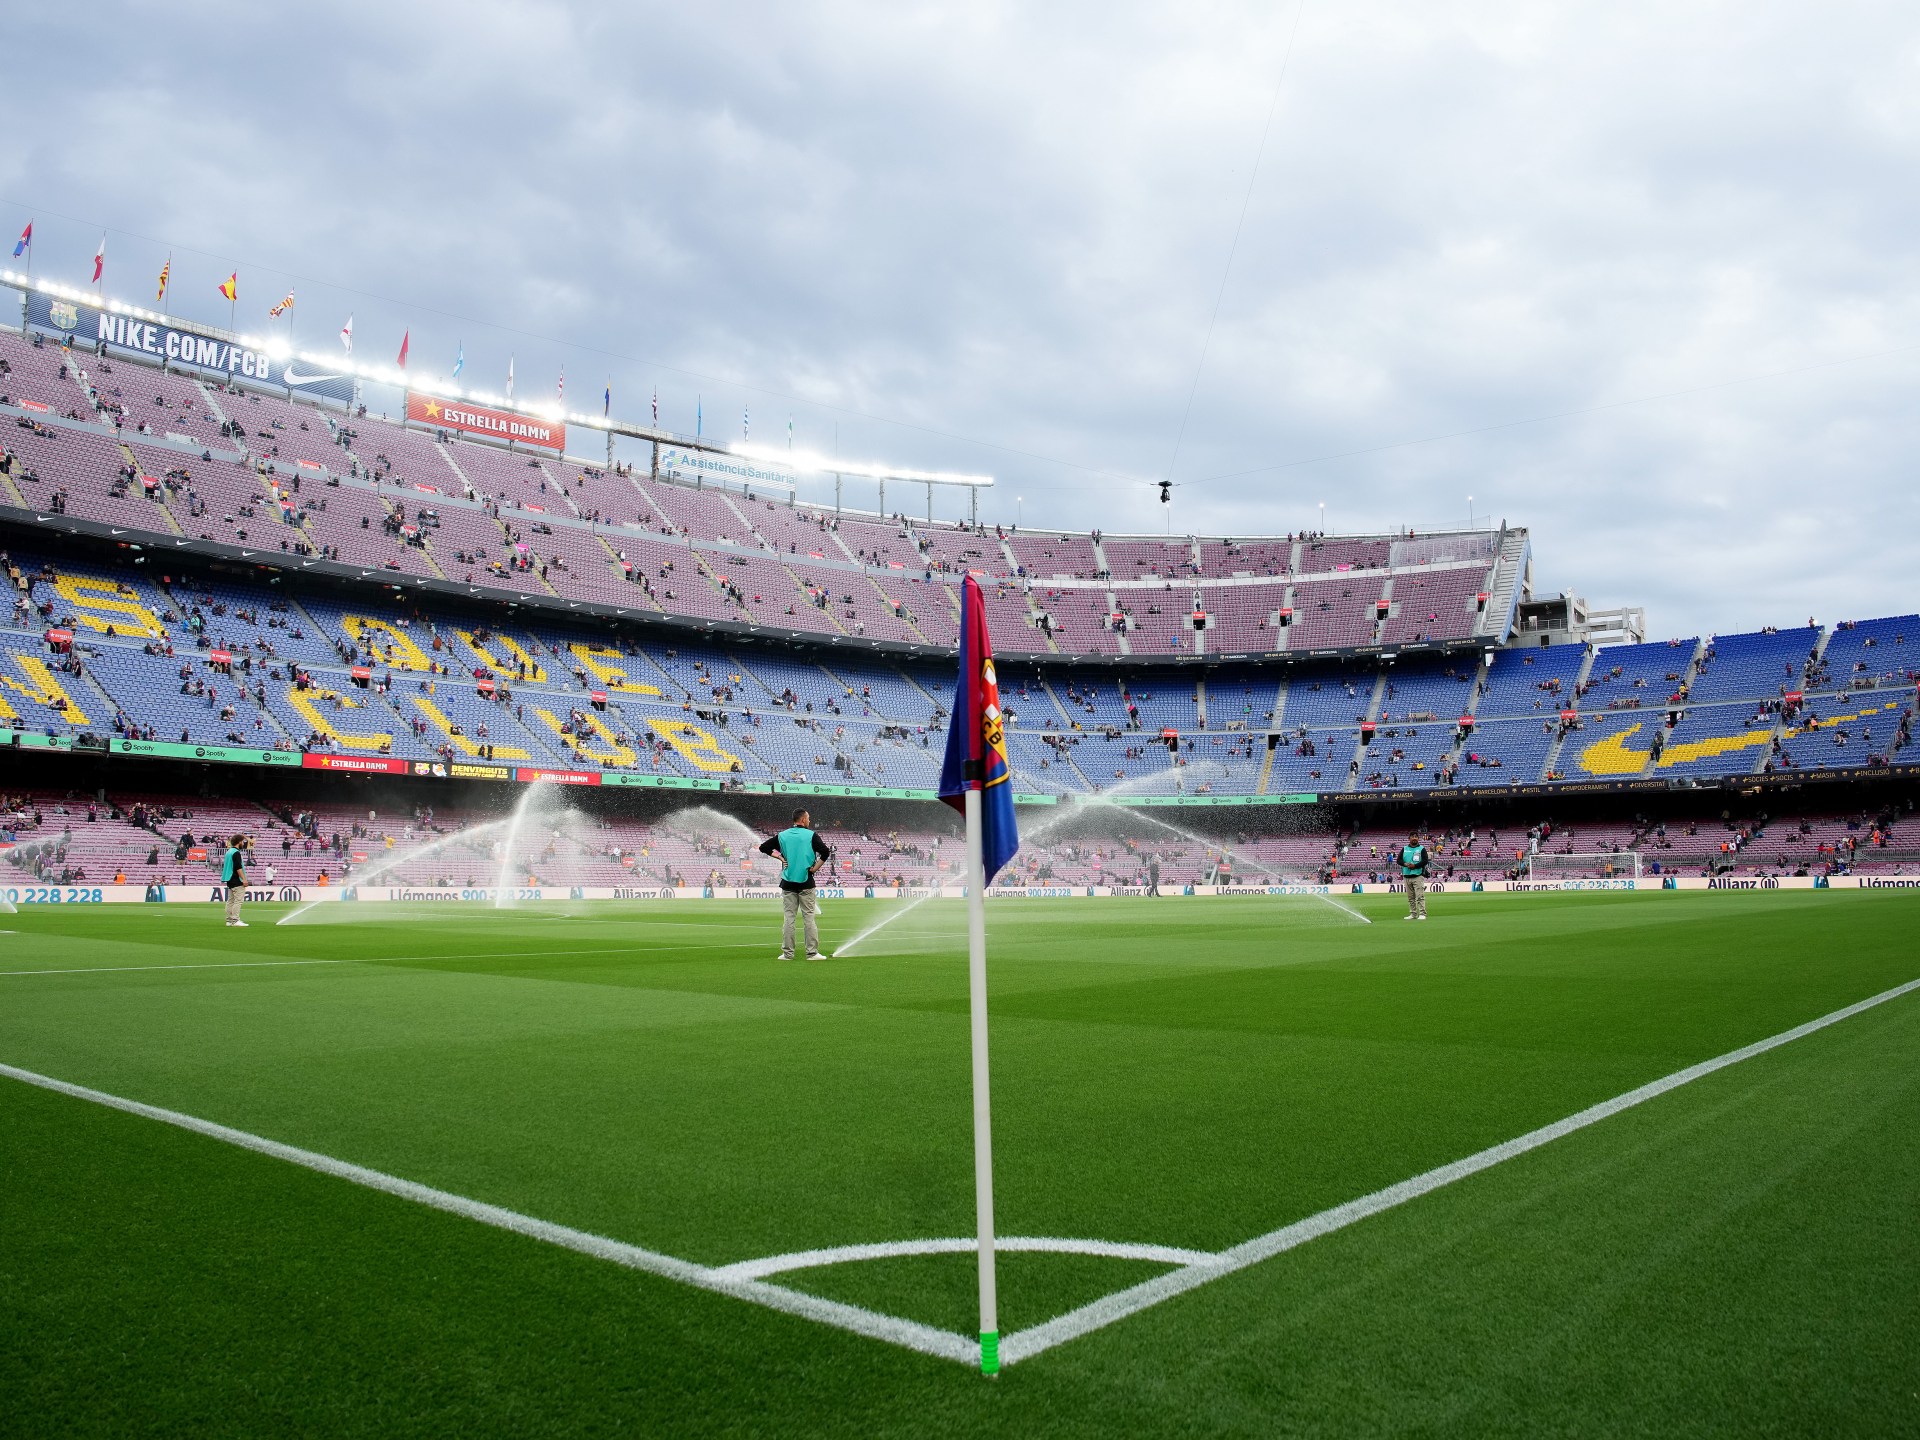 محكمة إسبانية تأمر برشلونة بدفع 23 مليون يورو | رياضة – البوكس نيوز